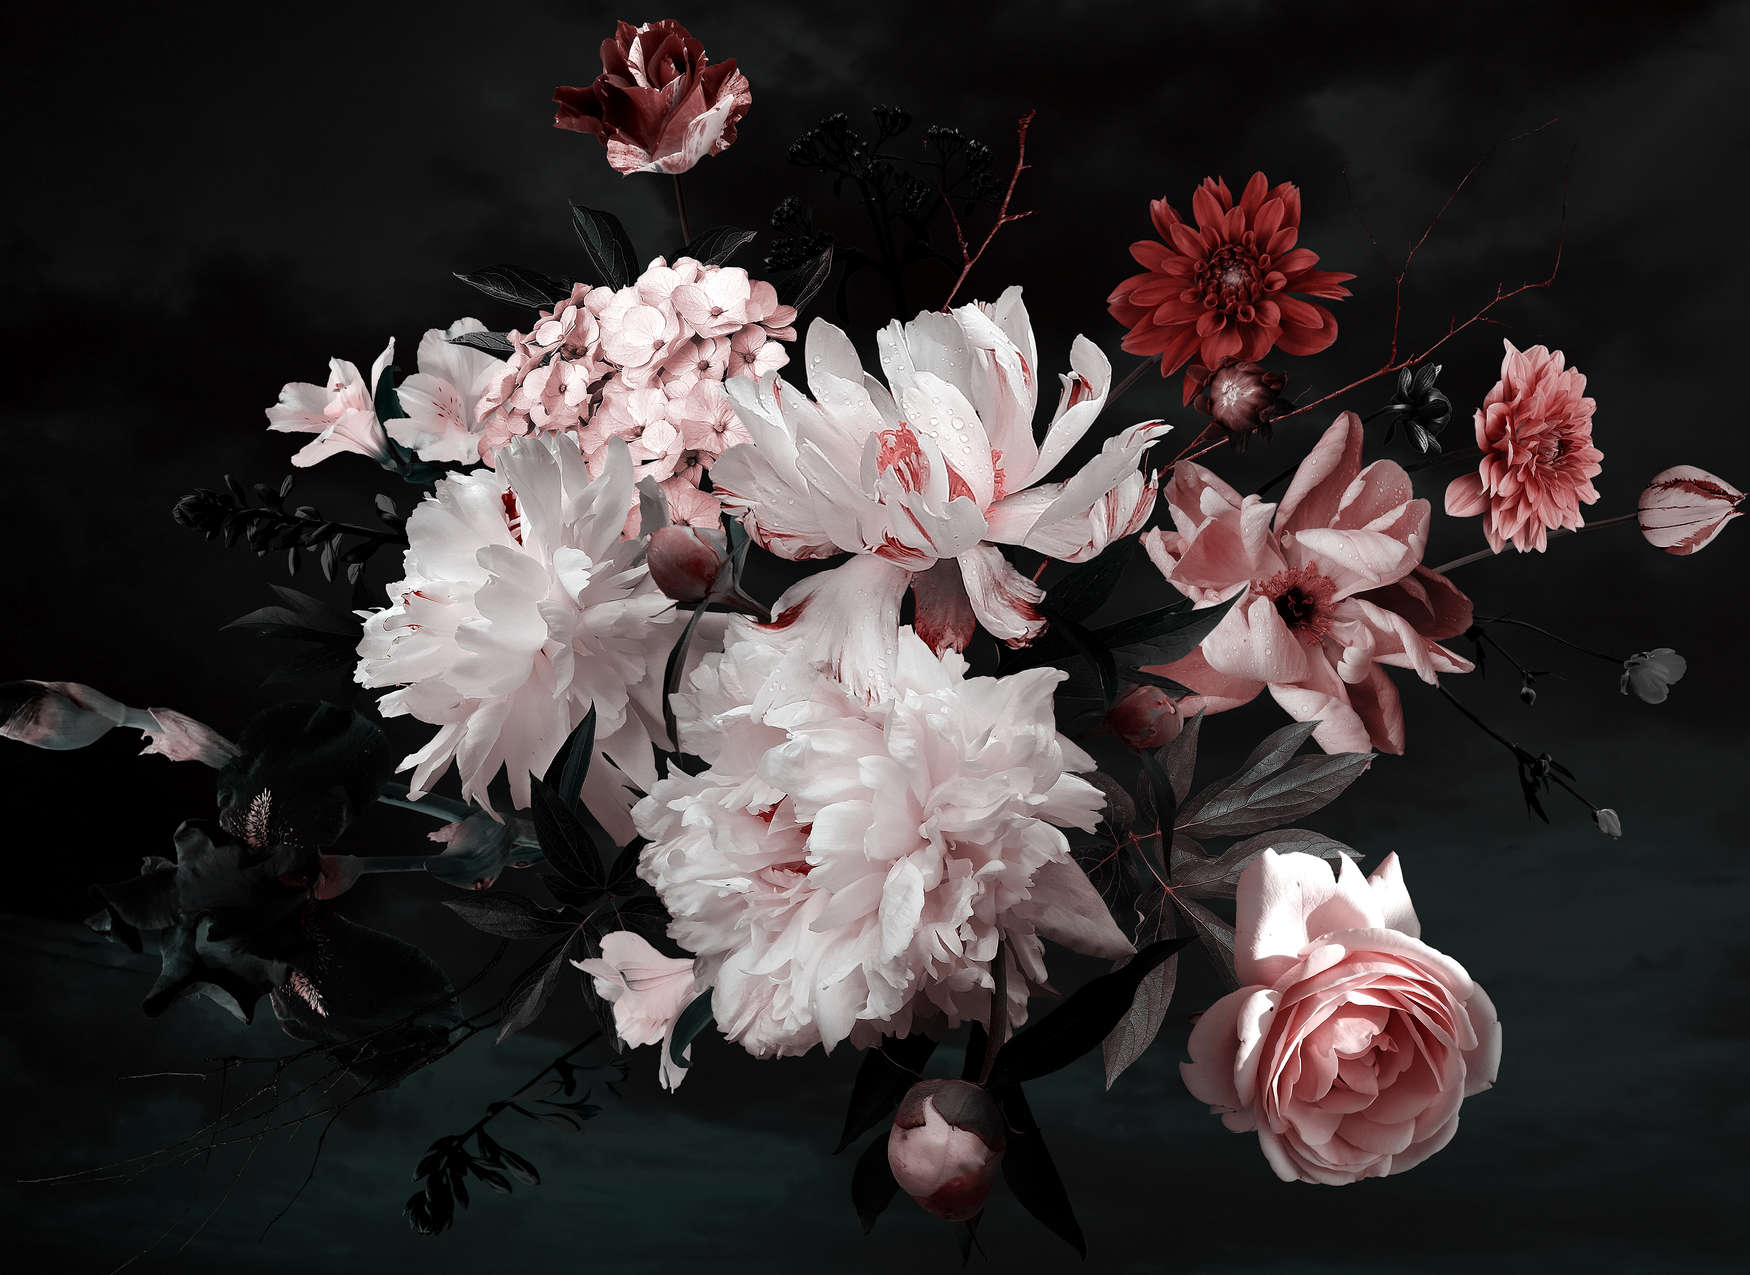             Bouquet de fleurs papier peint - blanc, rose, noir
        